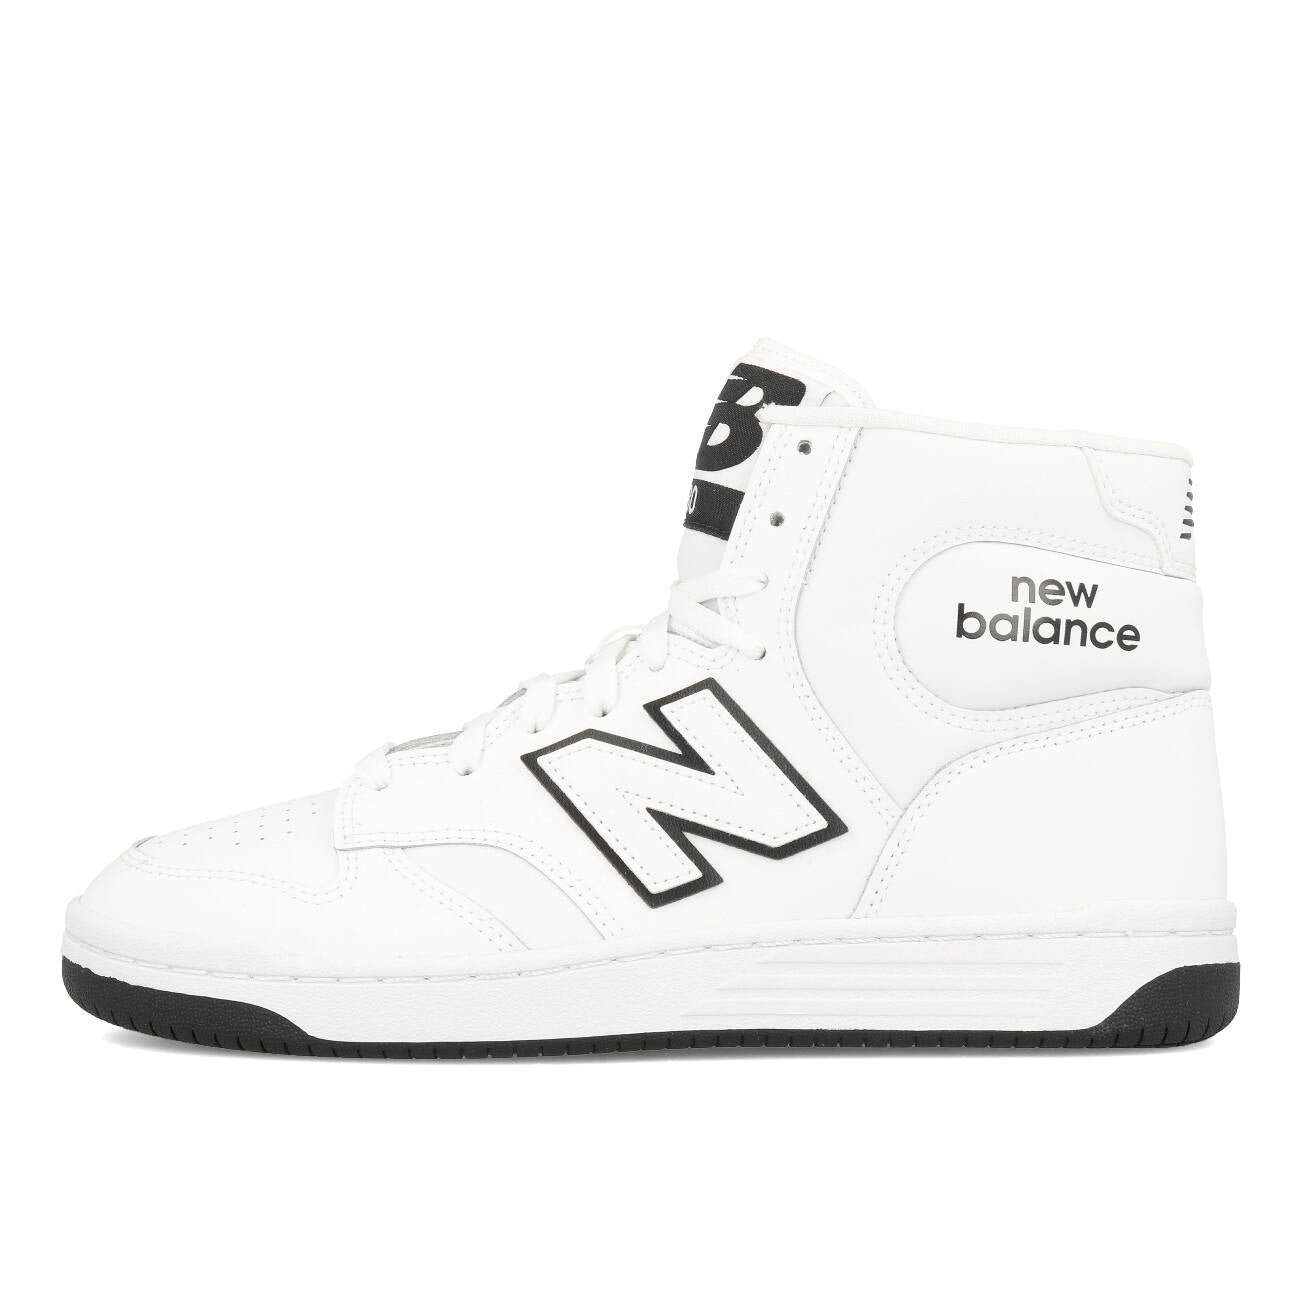 New Balance BB 480 COA Hi White Black